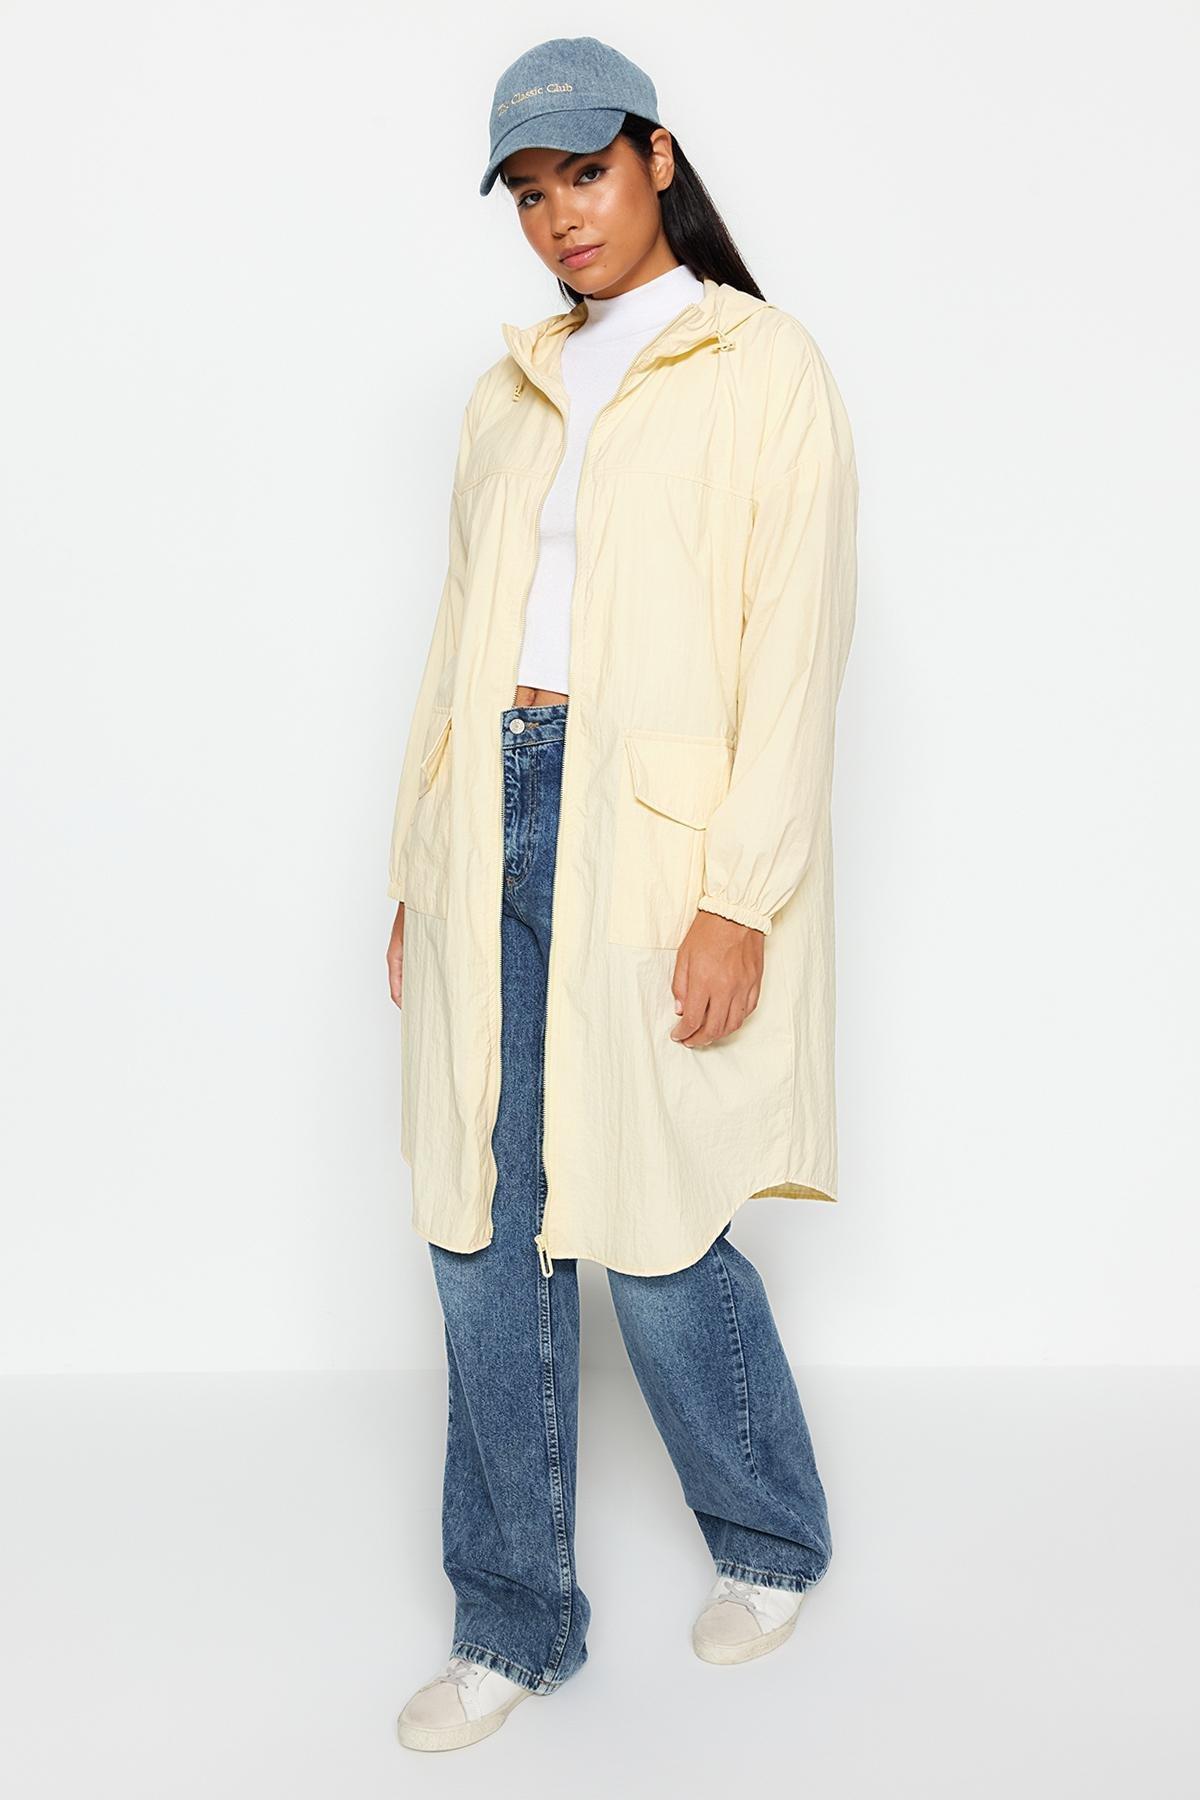 Trendyol - Beige Oversized Hooded Water Repellent Raincoat